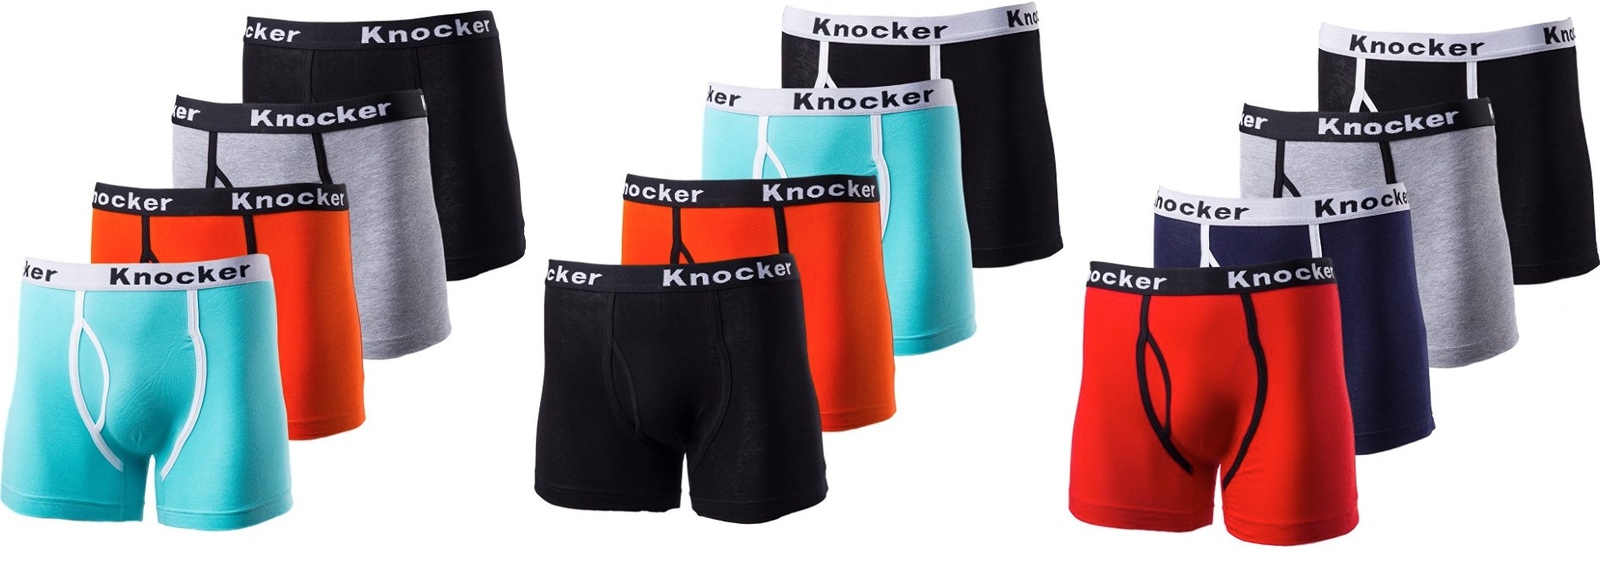 6pk Men’s Authentic Knocker Plain Boxer Briefs Cotton Breathable Long Athletic